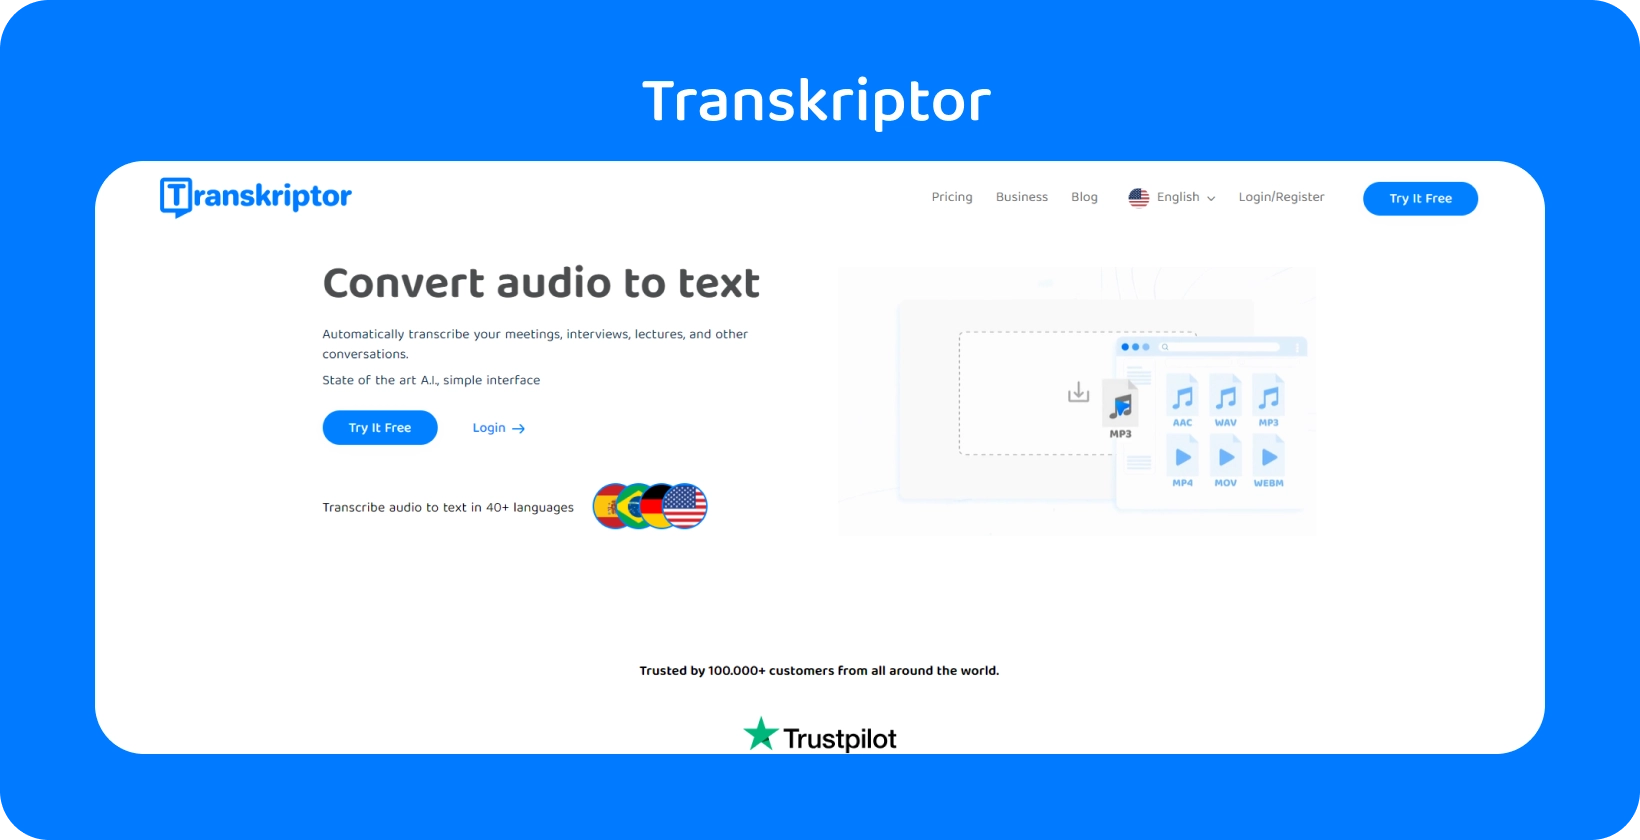 Скриншот интерфейса программного обеспечения для транскрипции «Transkriptor», показывающий транскрипцию диалога.